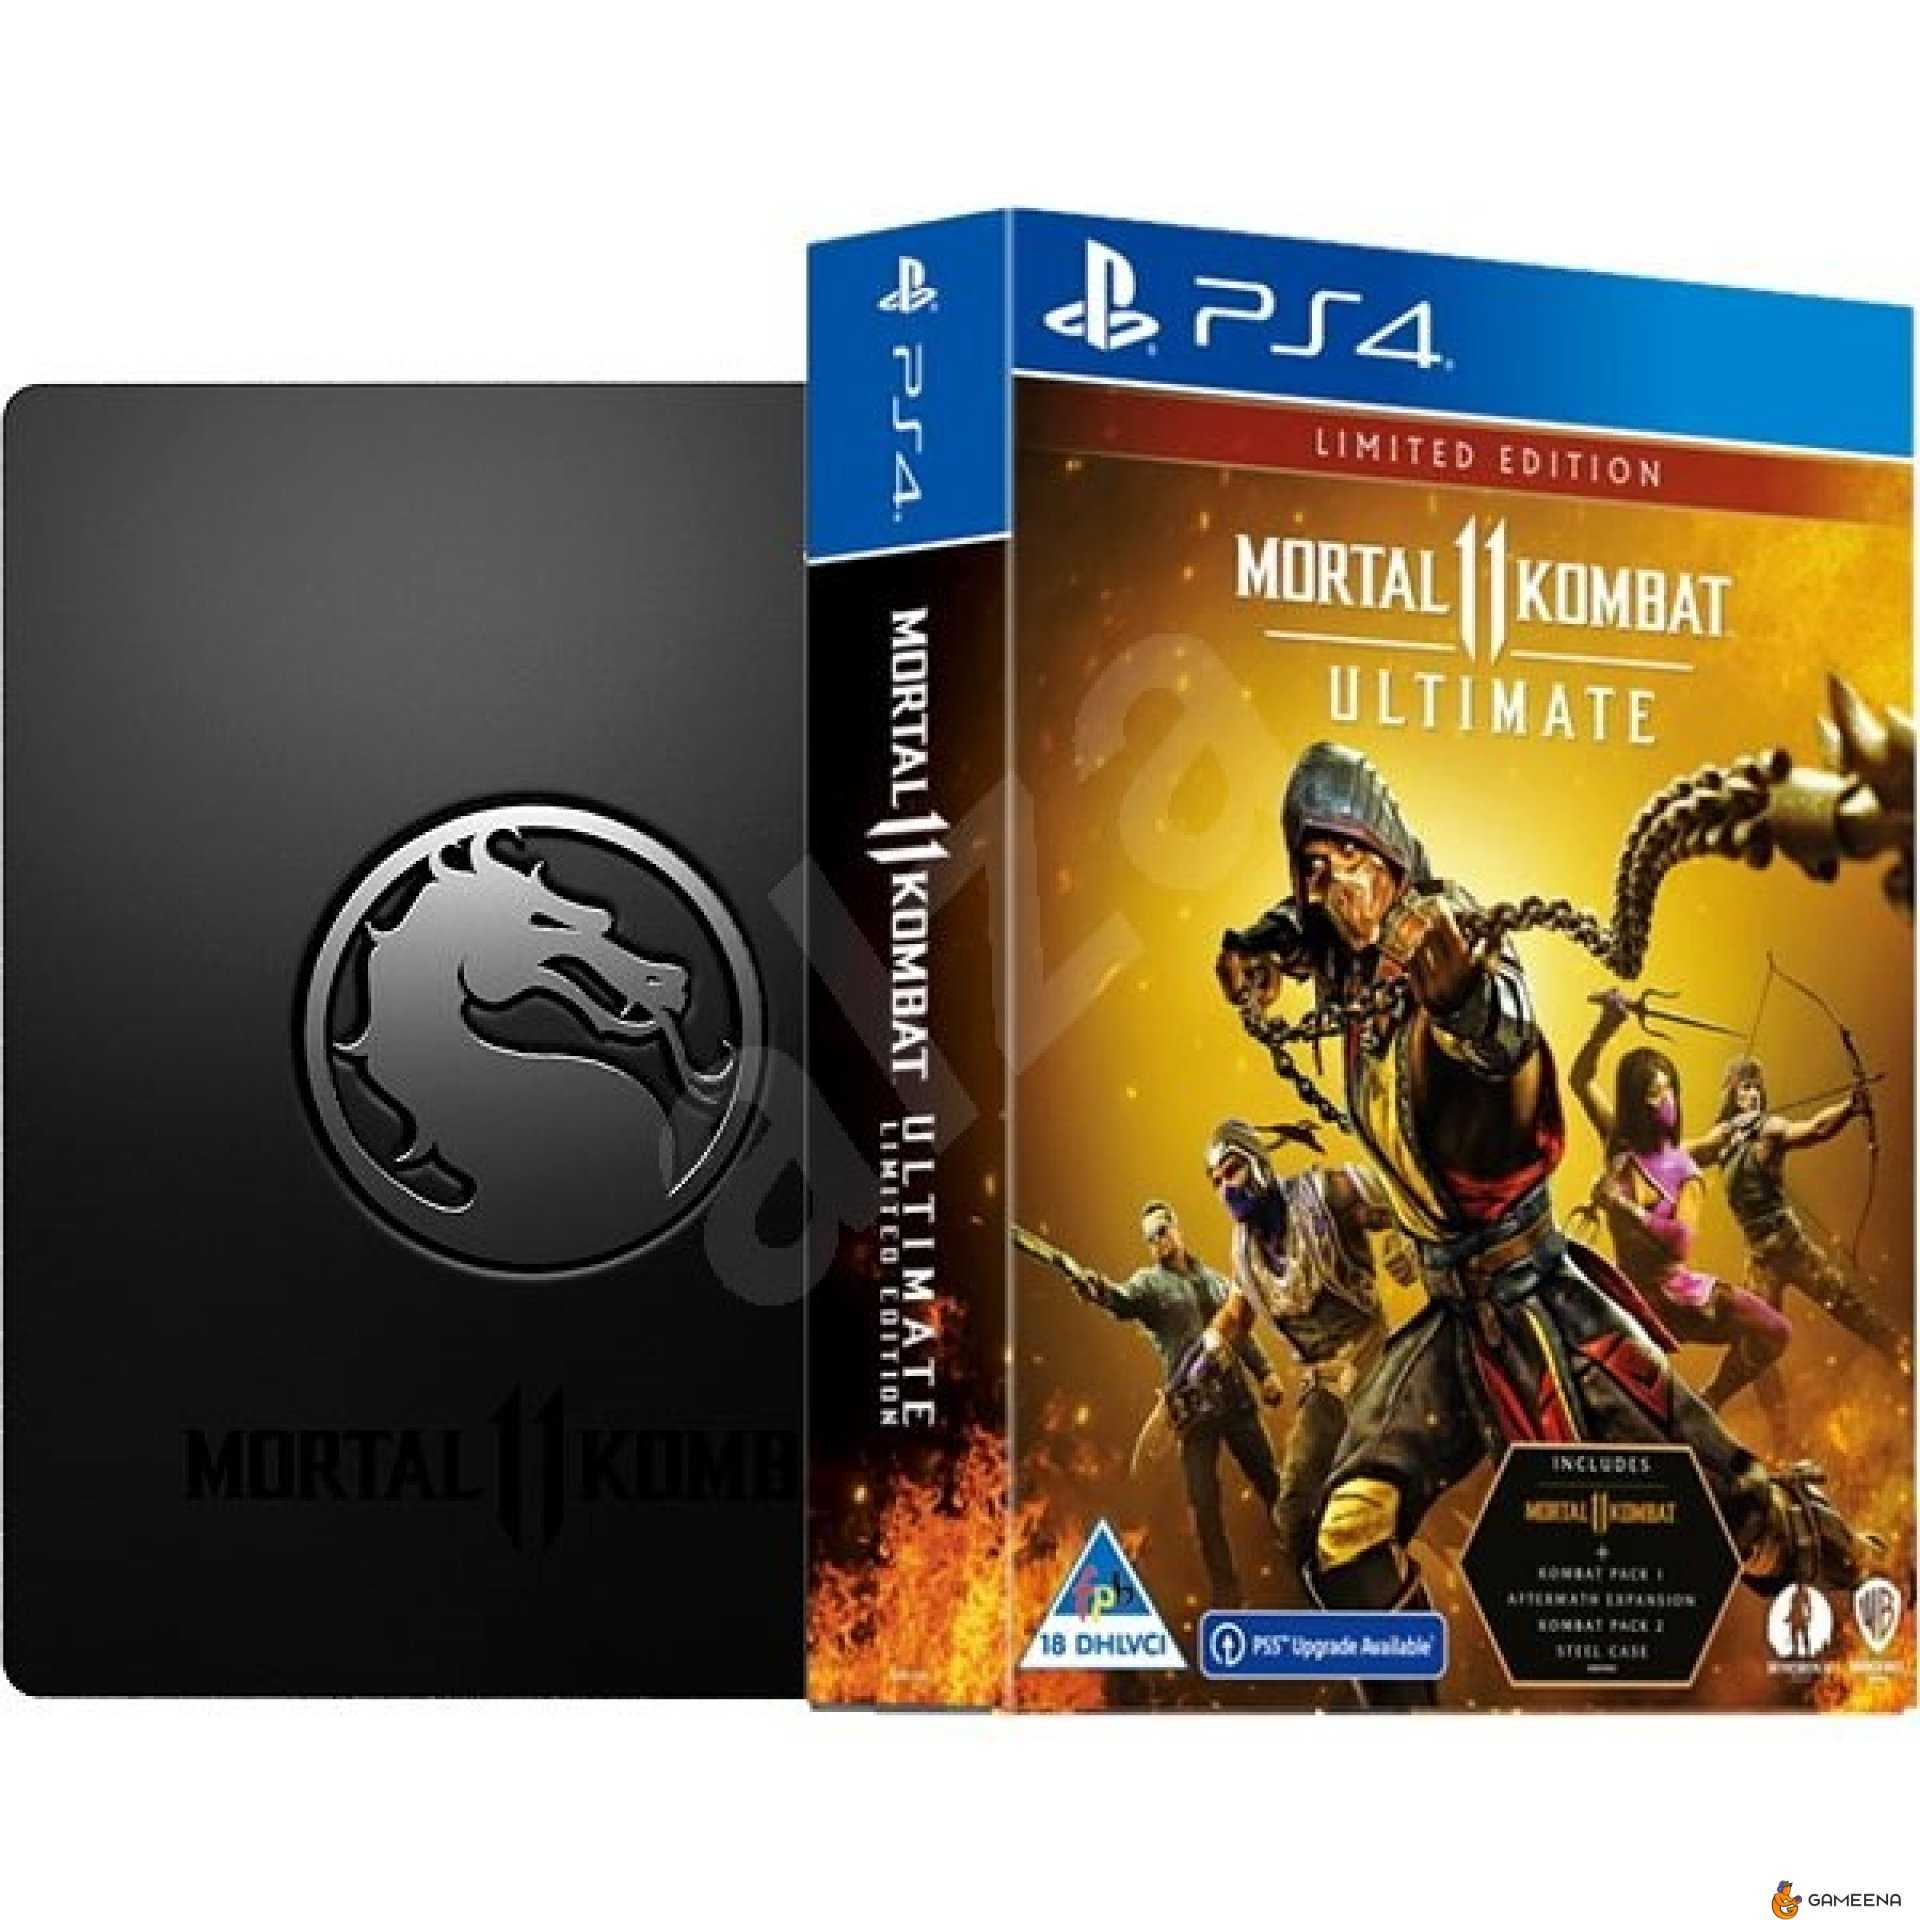 Мк 11 ultimate. Mortal Kombat 11 Ultimate Steelbook Edition. Mortal Kombat 11 ps4 диск. Ultimate-издание mk11. MK 11 Ultimate ps4.